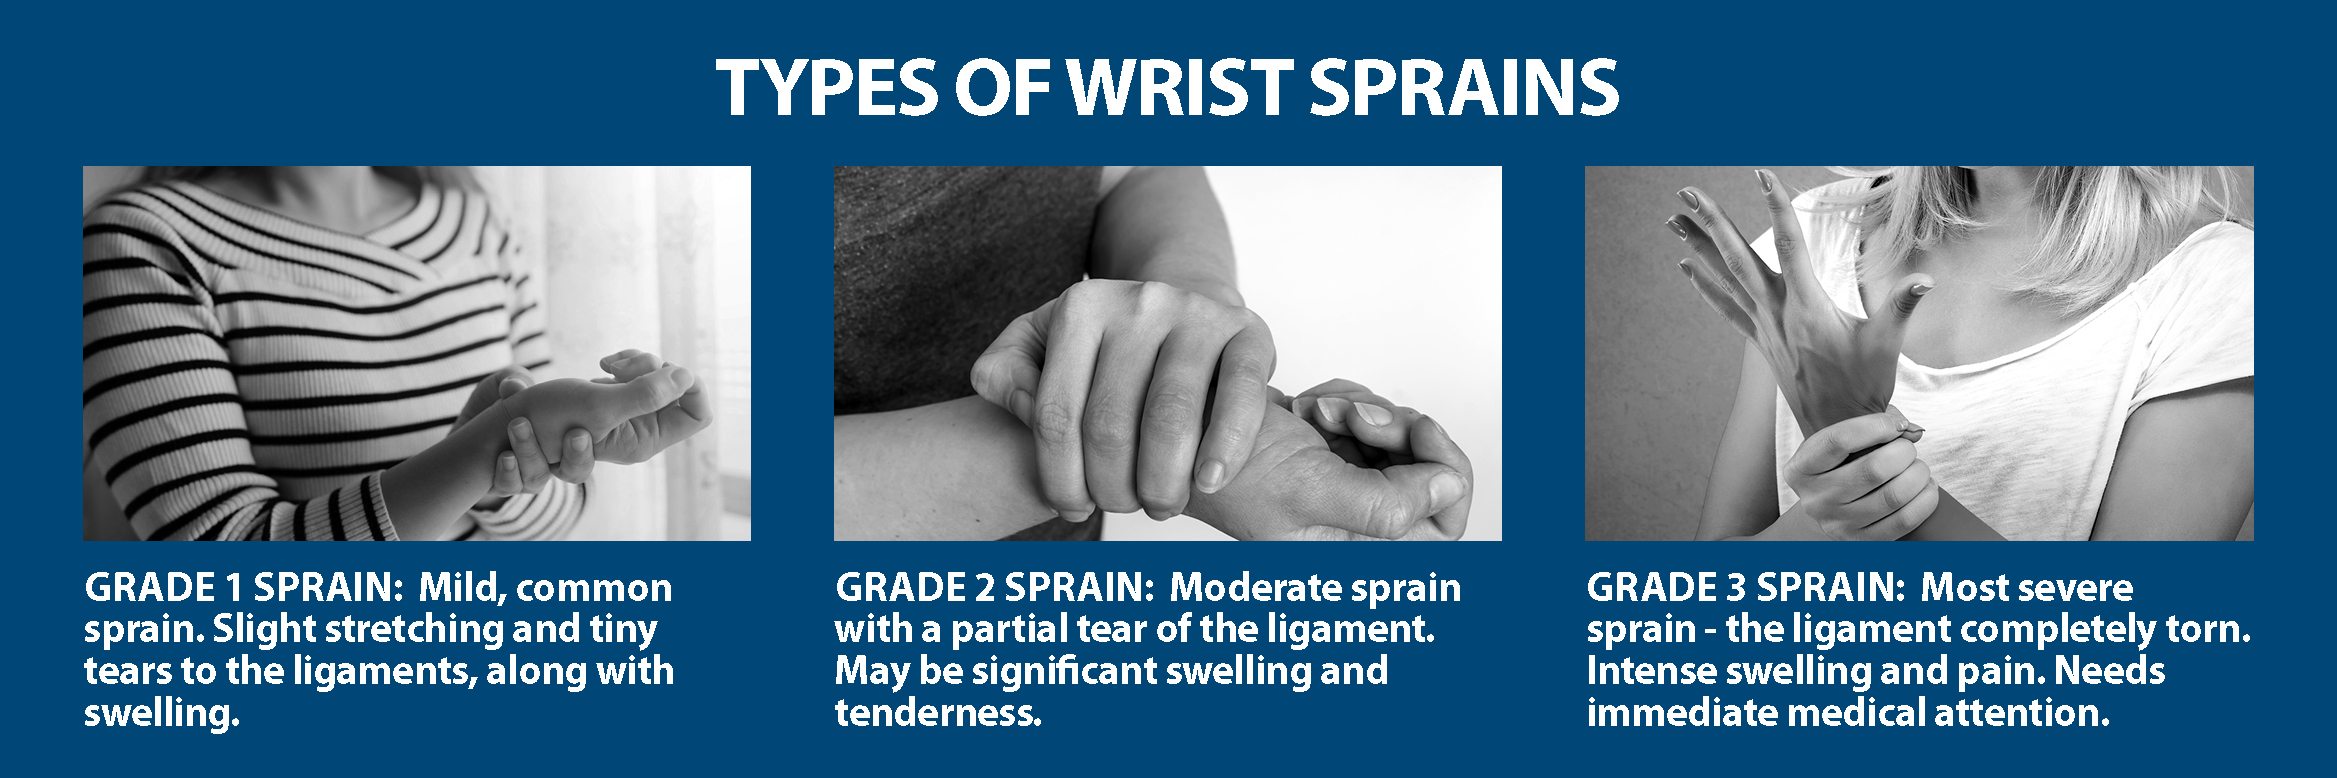 Wrist Sprains Information 